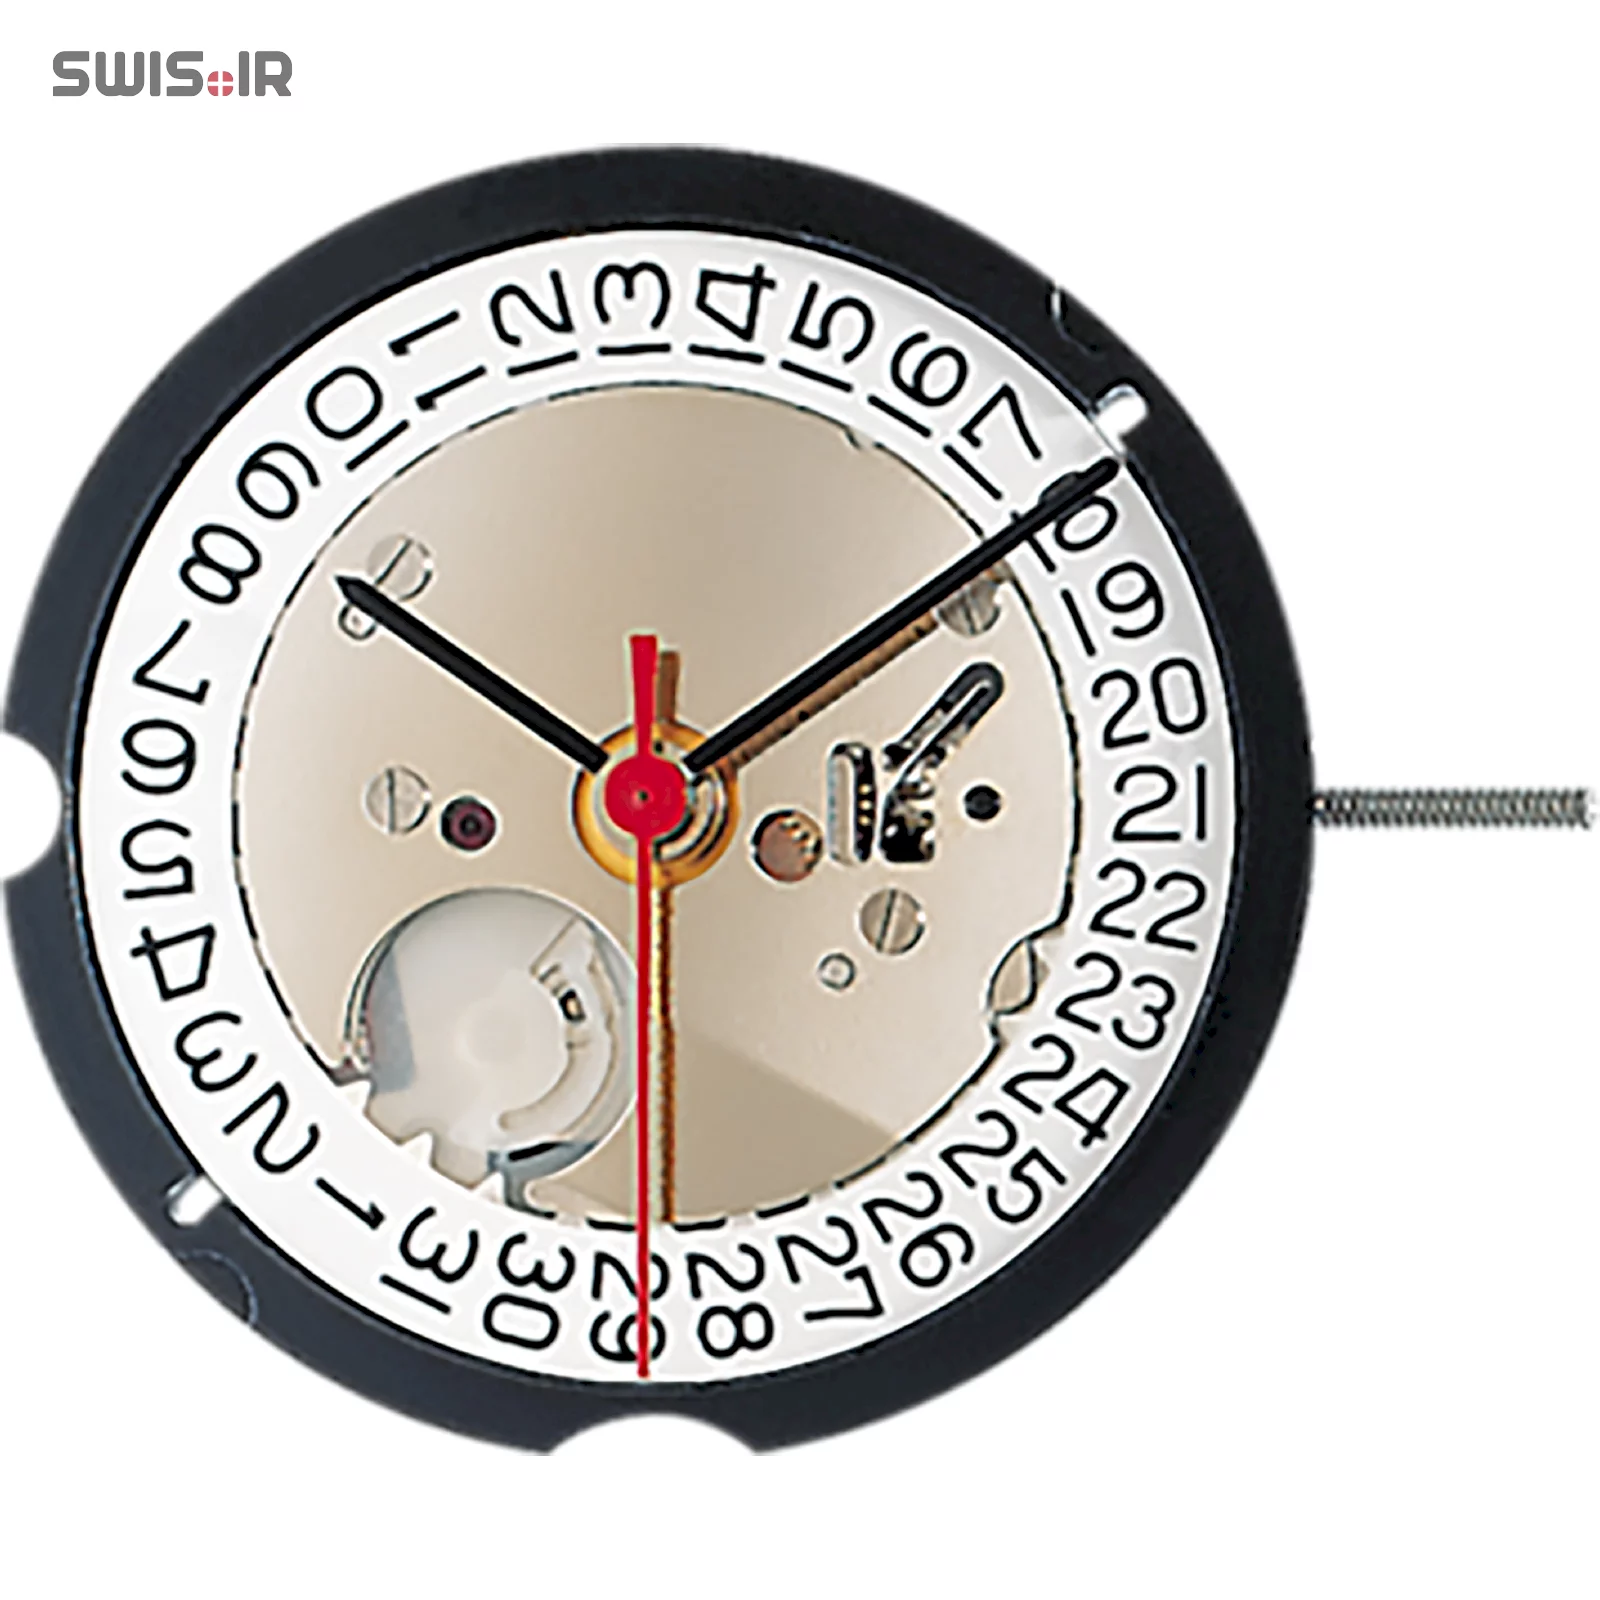 تصویر روی موتور ساعت کالیبر 505 ساخت شرکت روندا سوئیس